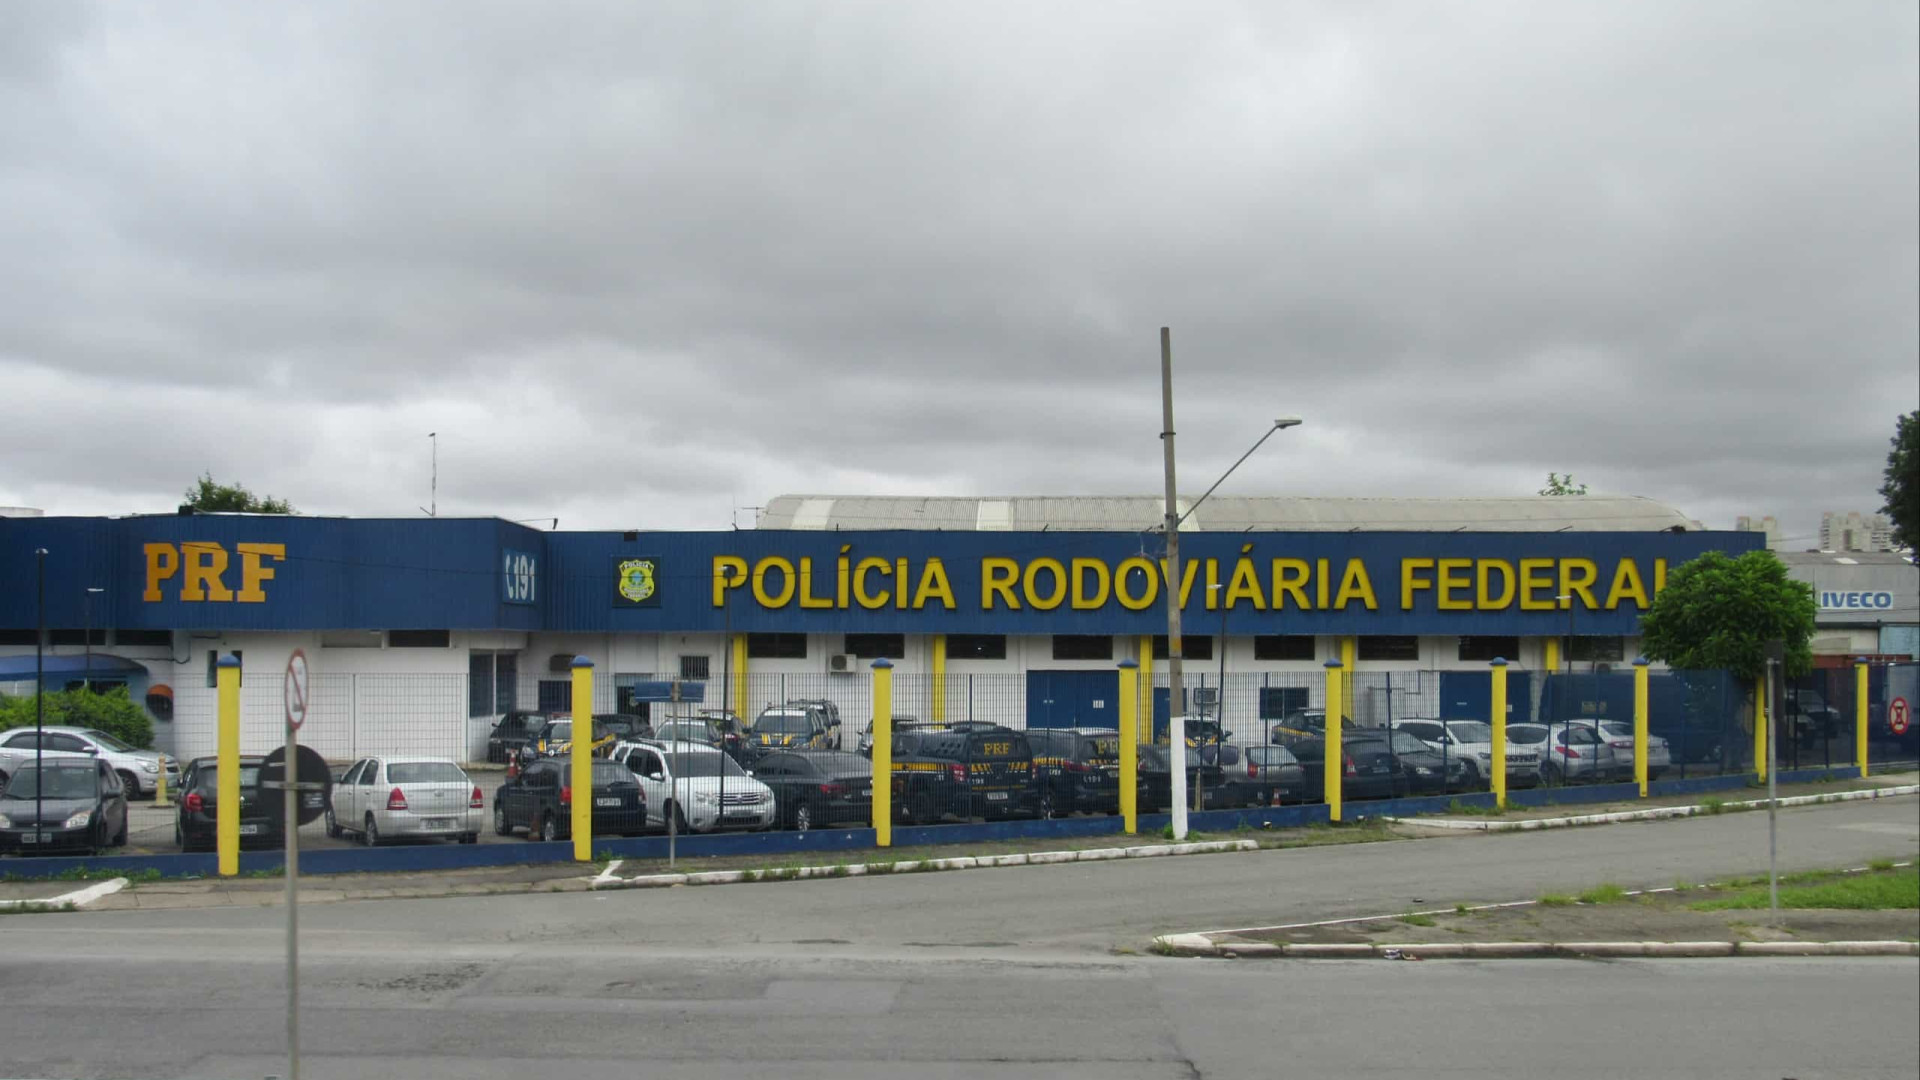 Rodovias federais registram 3 trechos completamente interditados no País, diz PRF